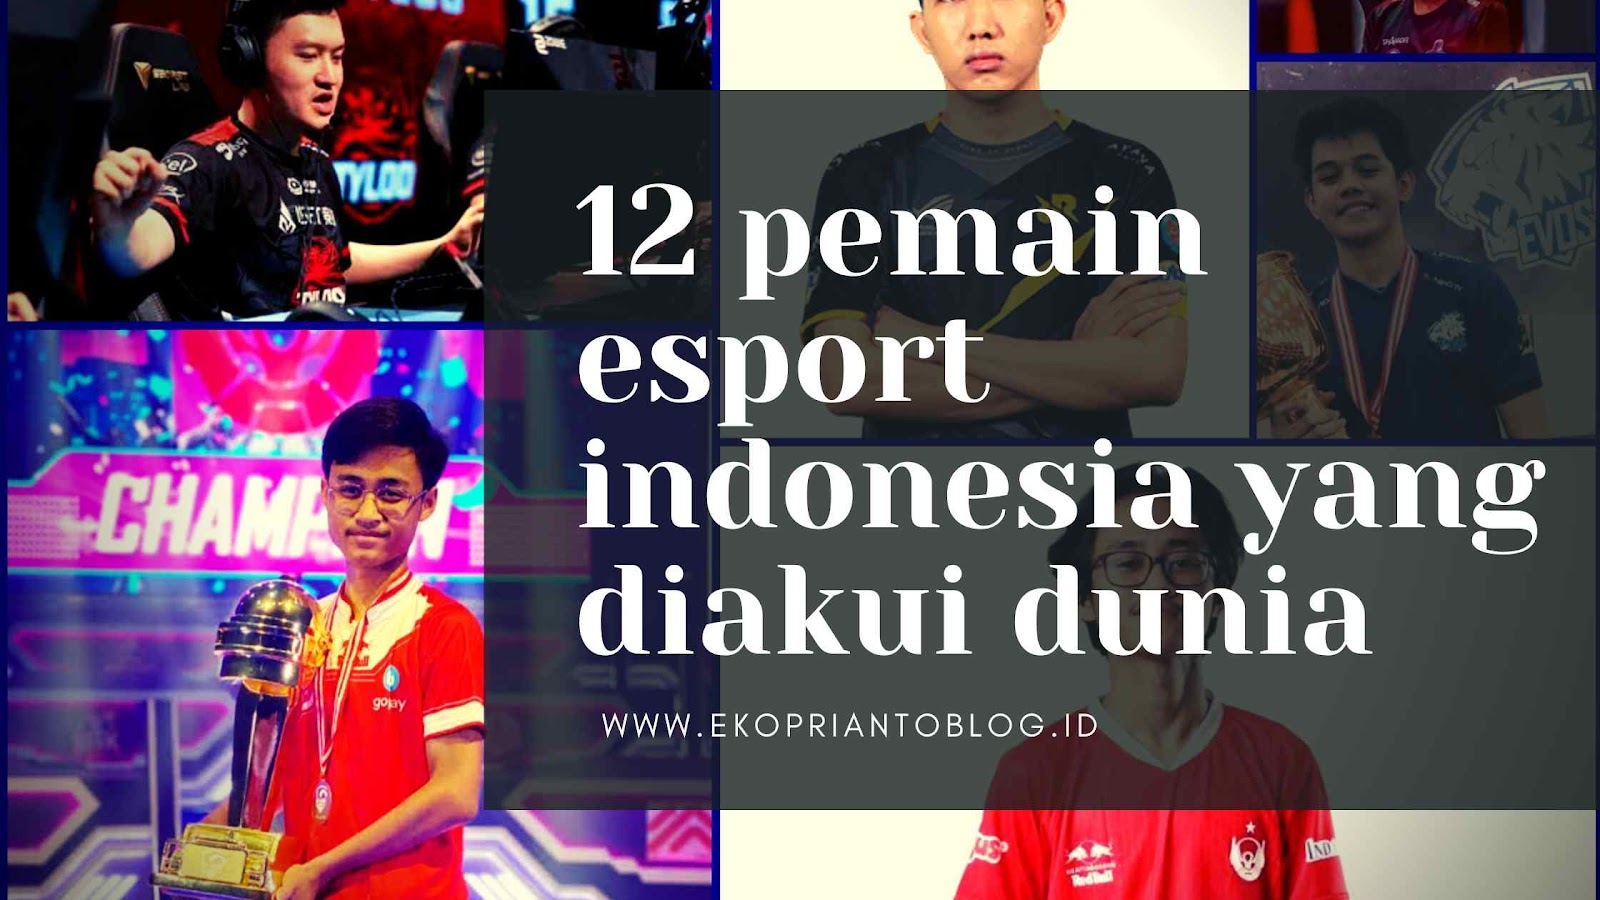 pemain esport indonesia yang diakui dunia